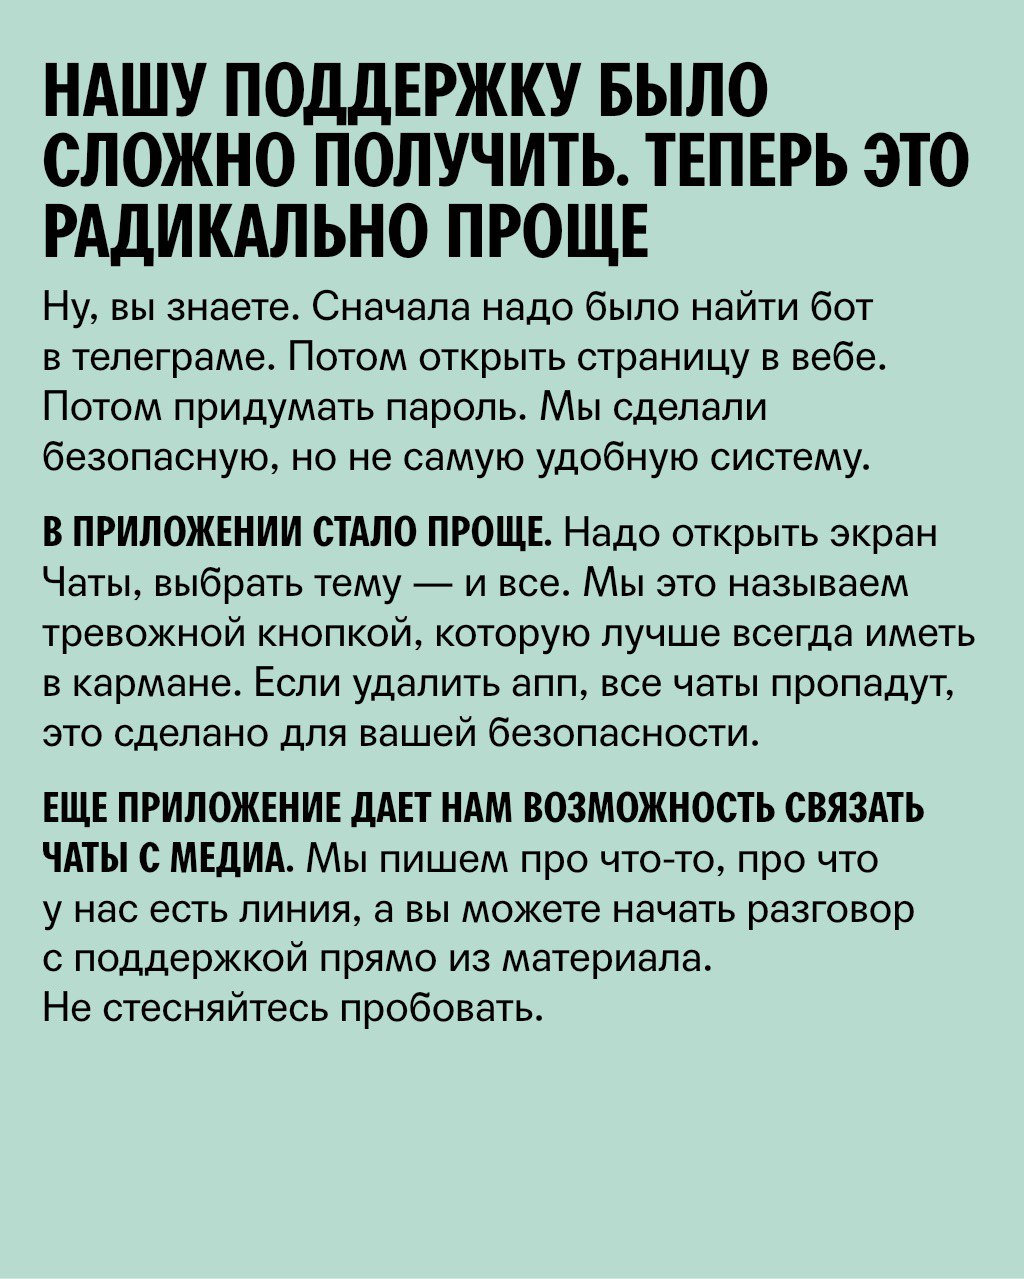 Телефон техподдержки телеграмм москва фото 95